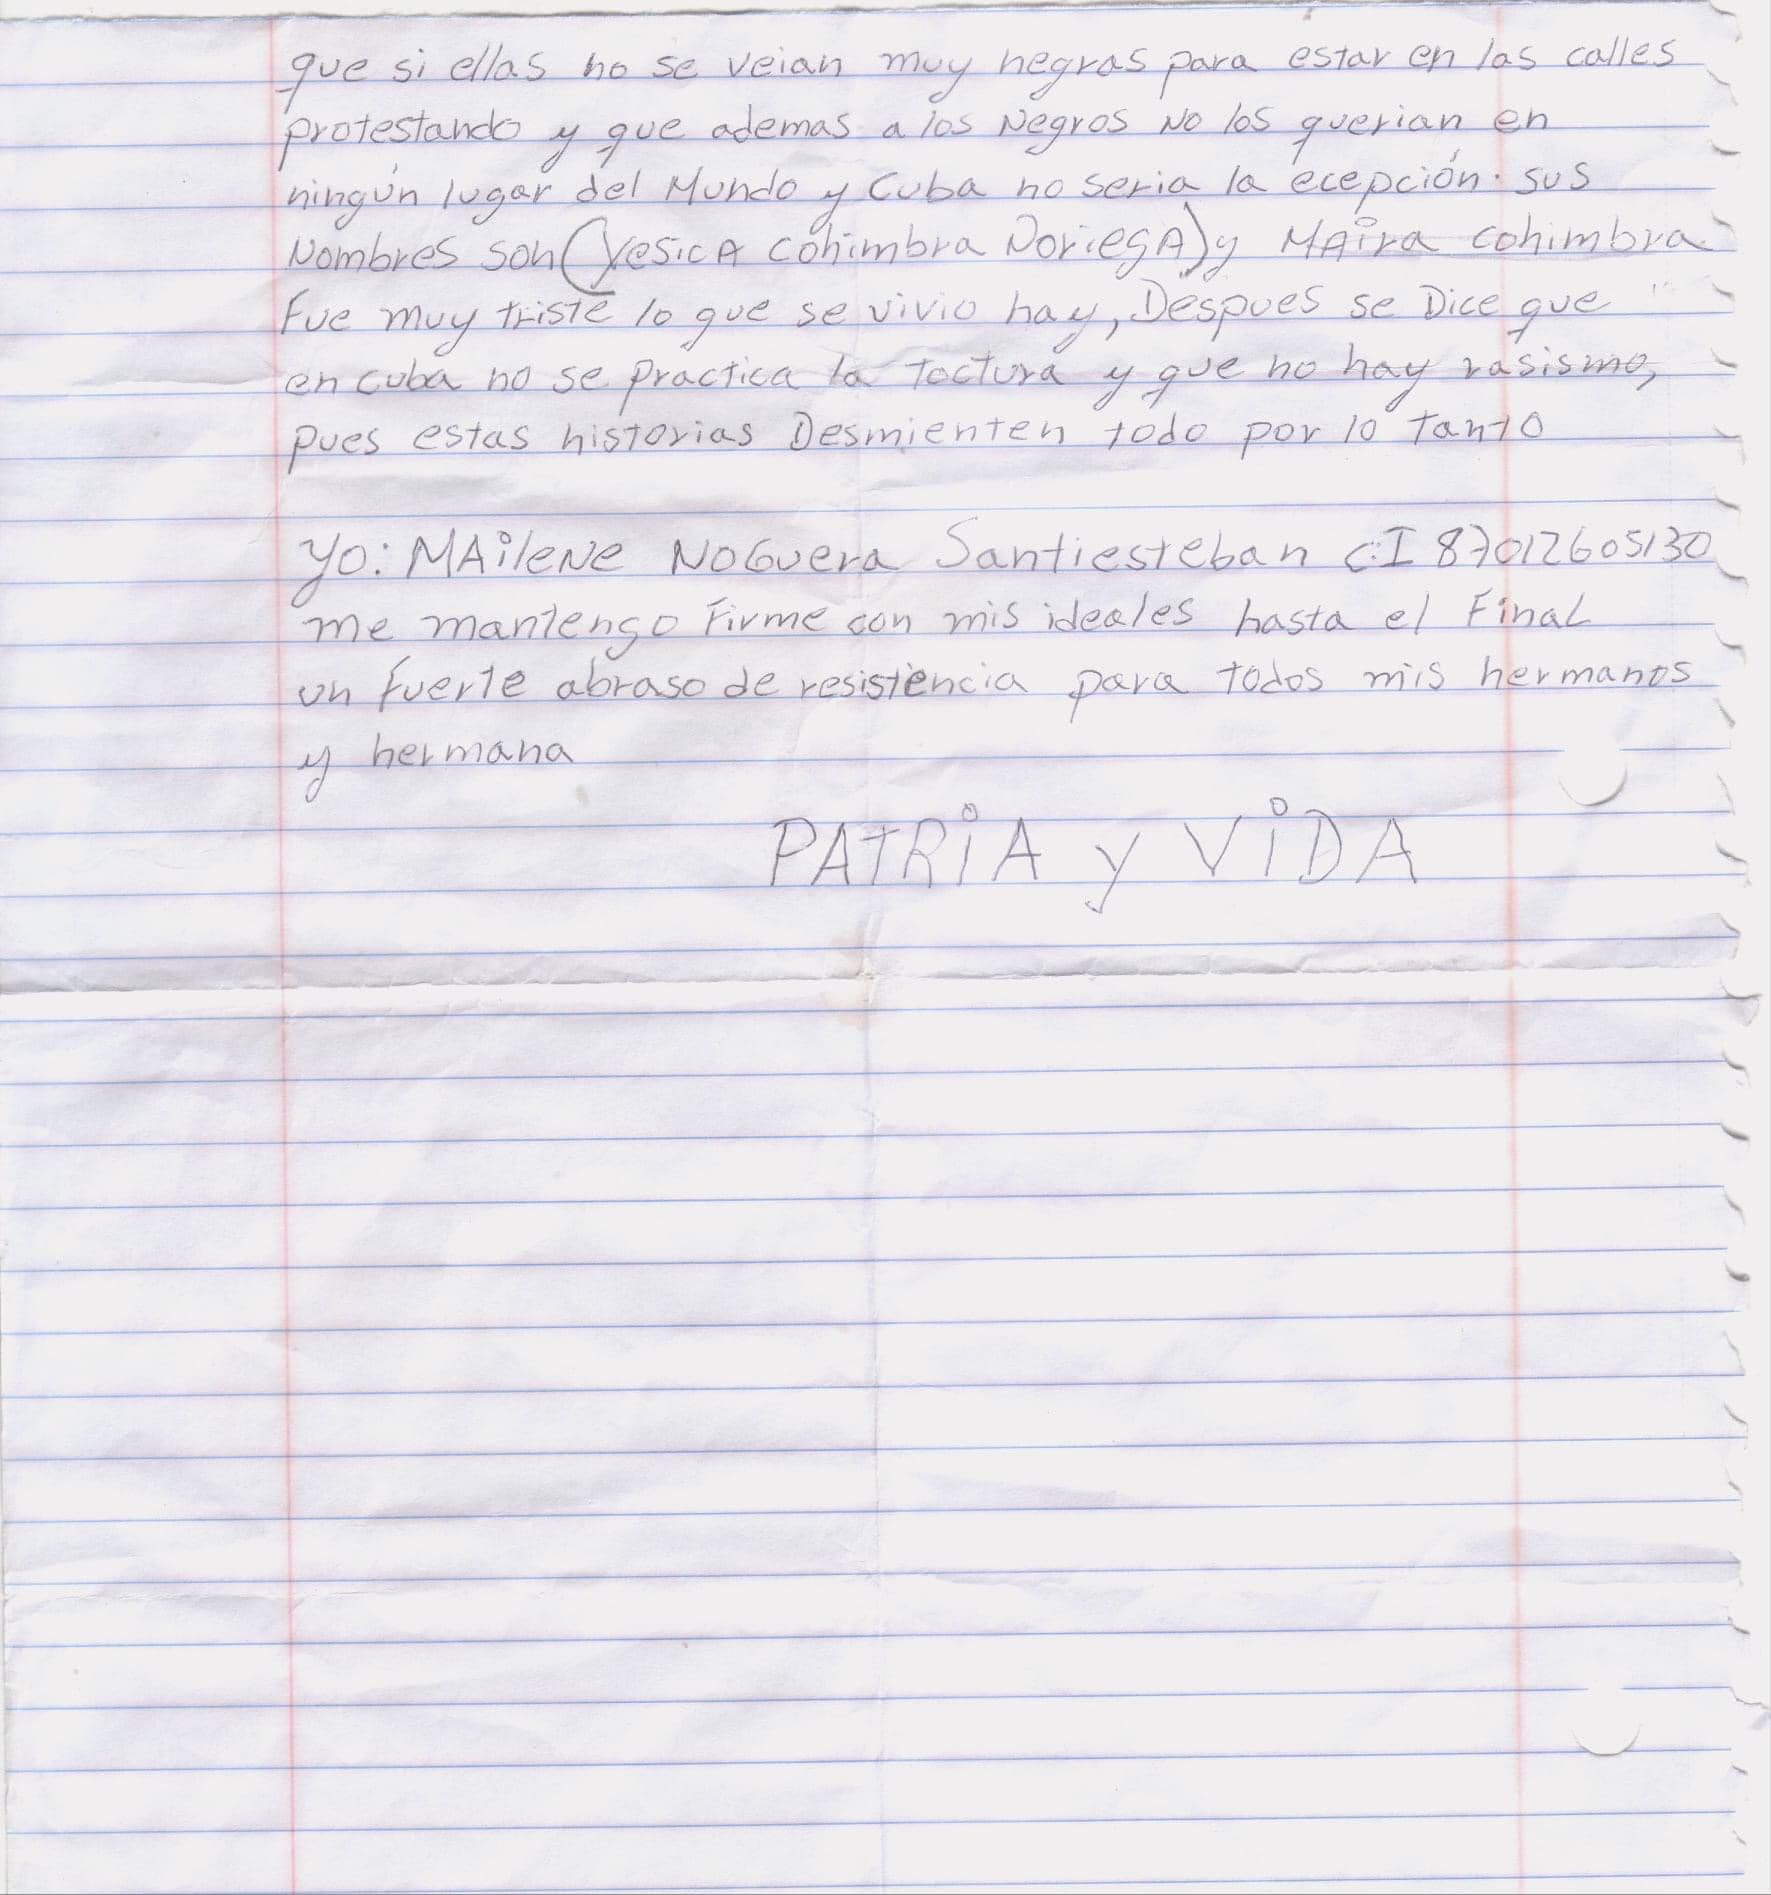 Carta enviada por Noguera Santiesteban desde prisión.